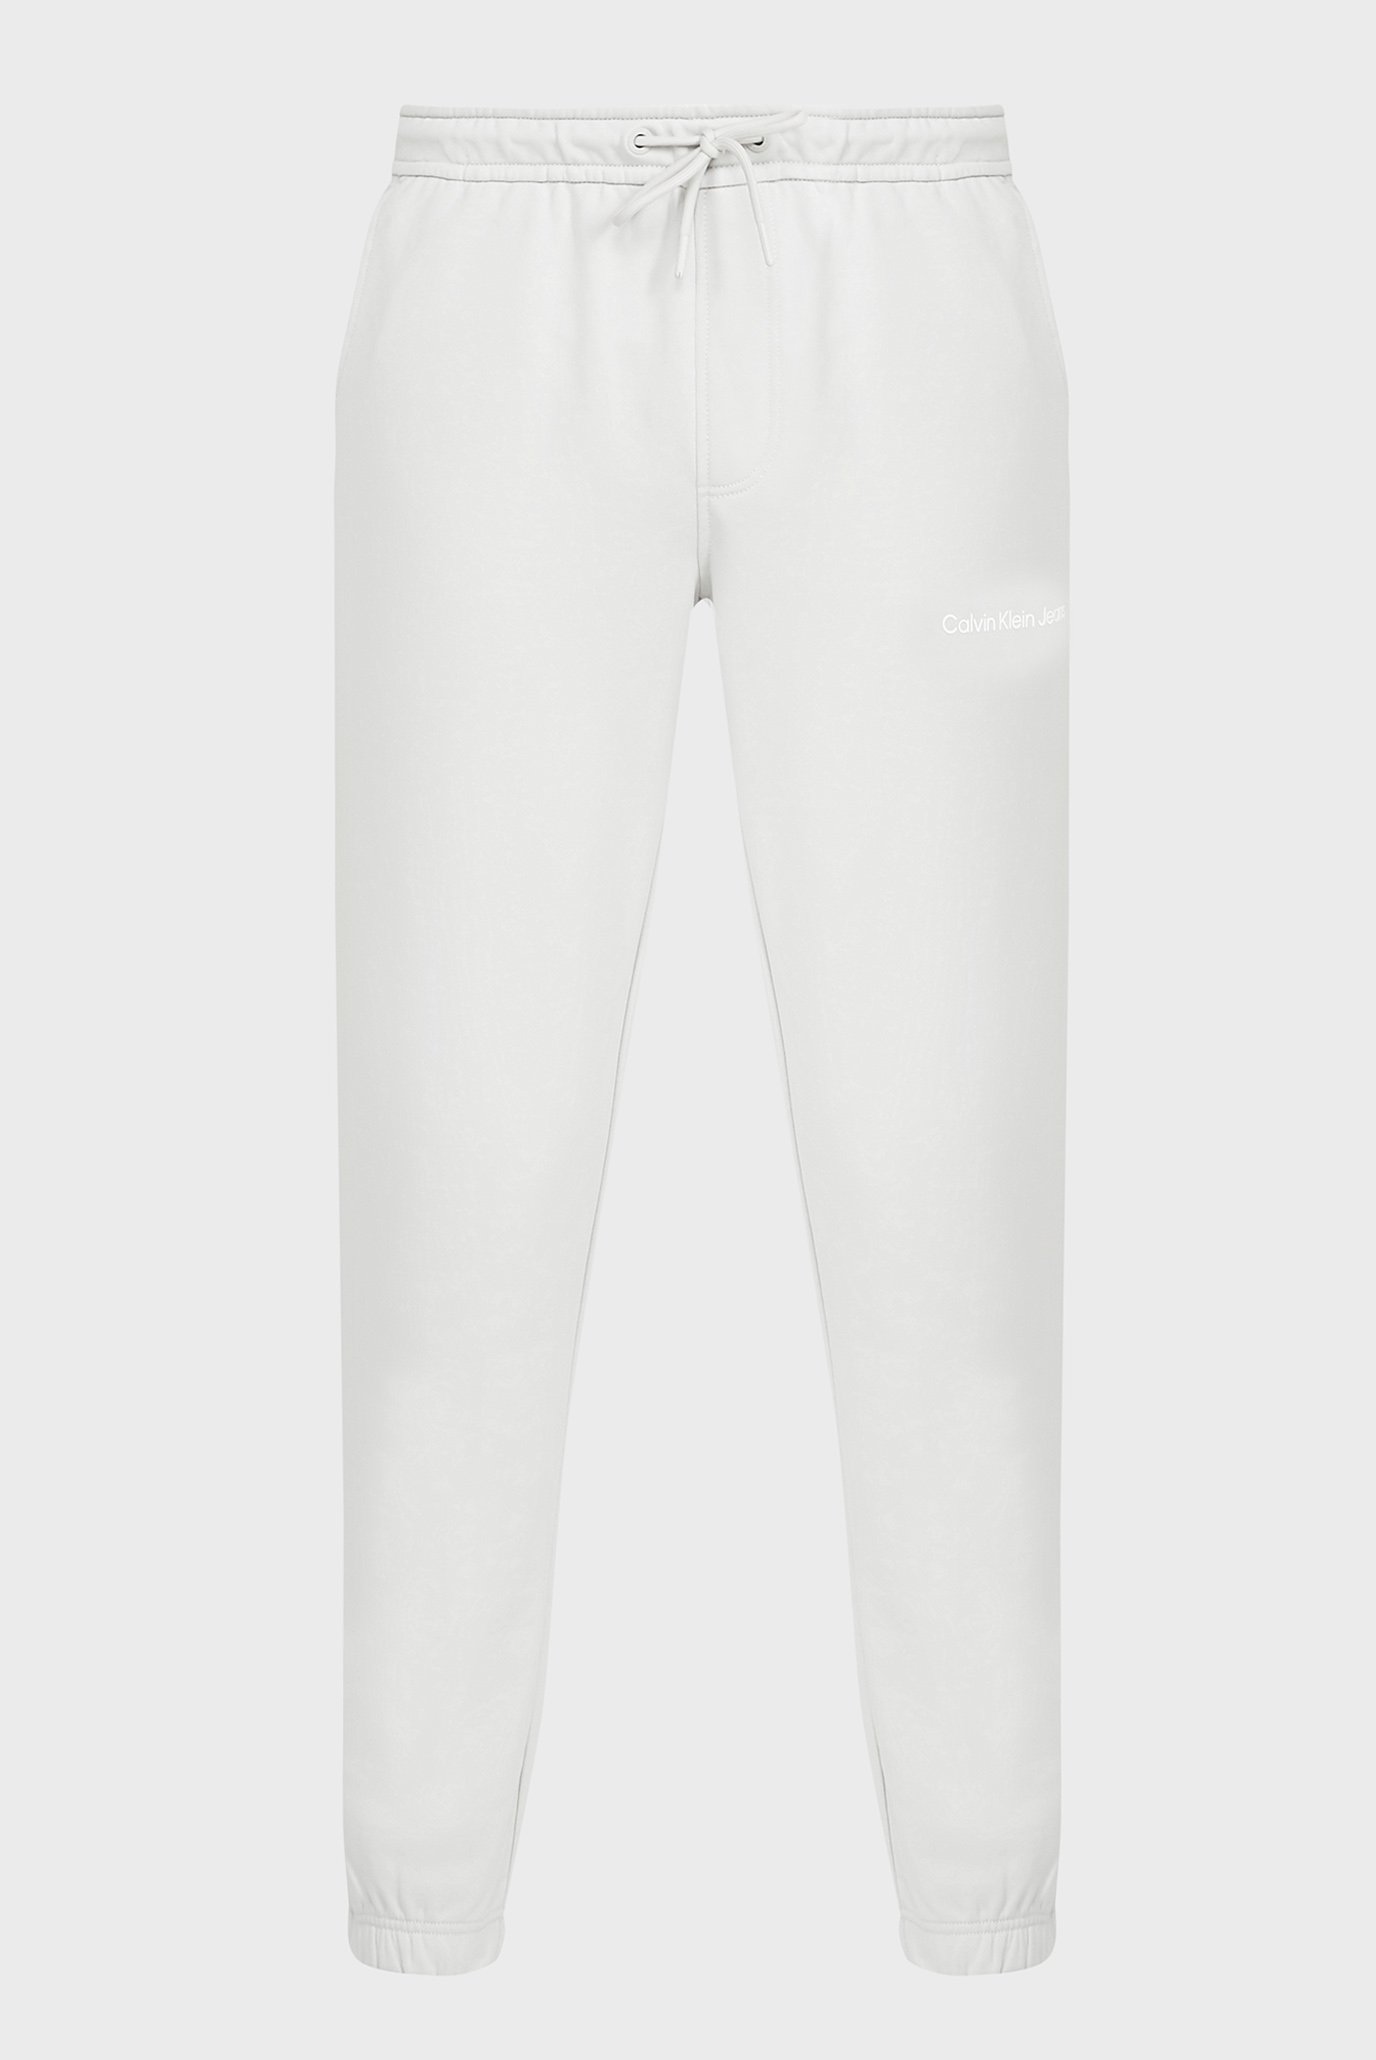 Чоловічі світло-сірі спортивні штани INSTITUTIONAL HWK PANT 1